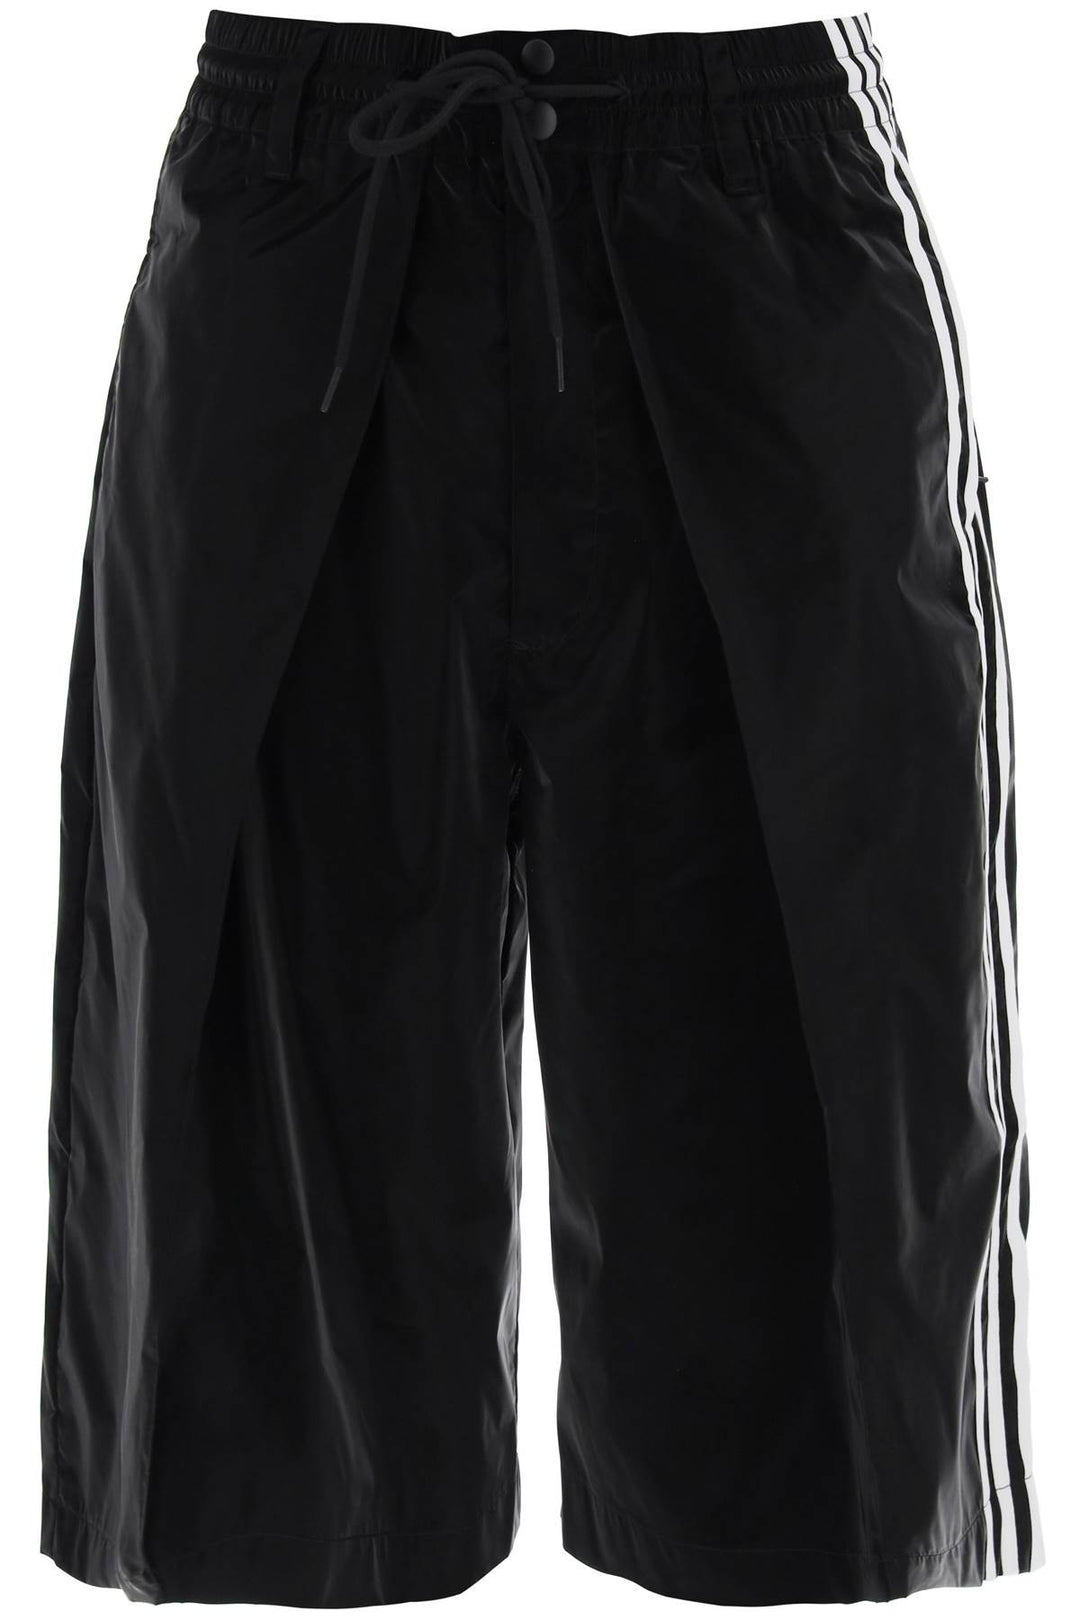 Y 3 Shiny Nylon Bermuda Shorts   Black